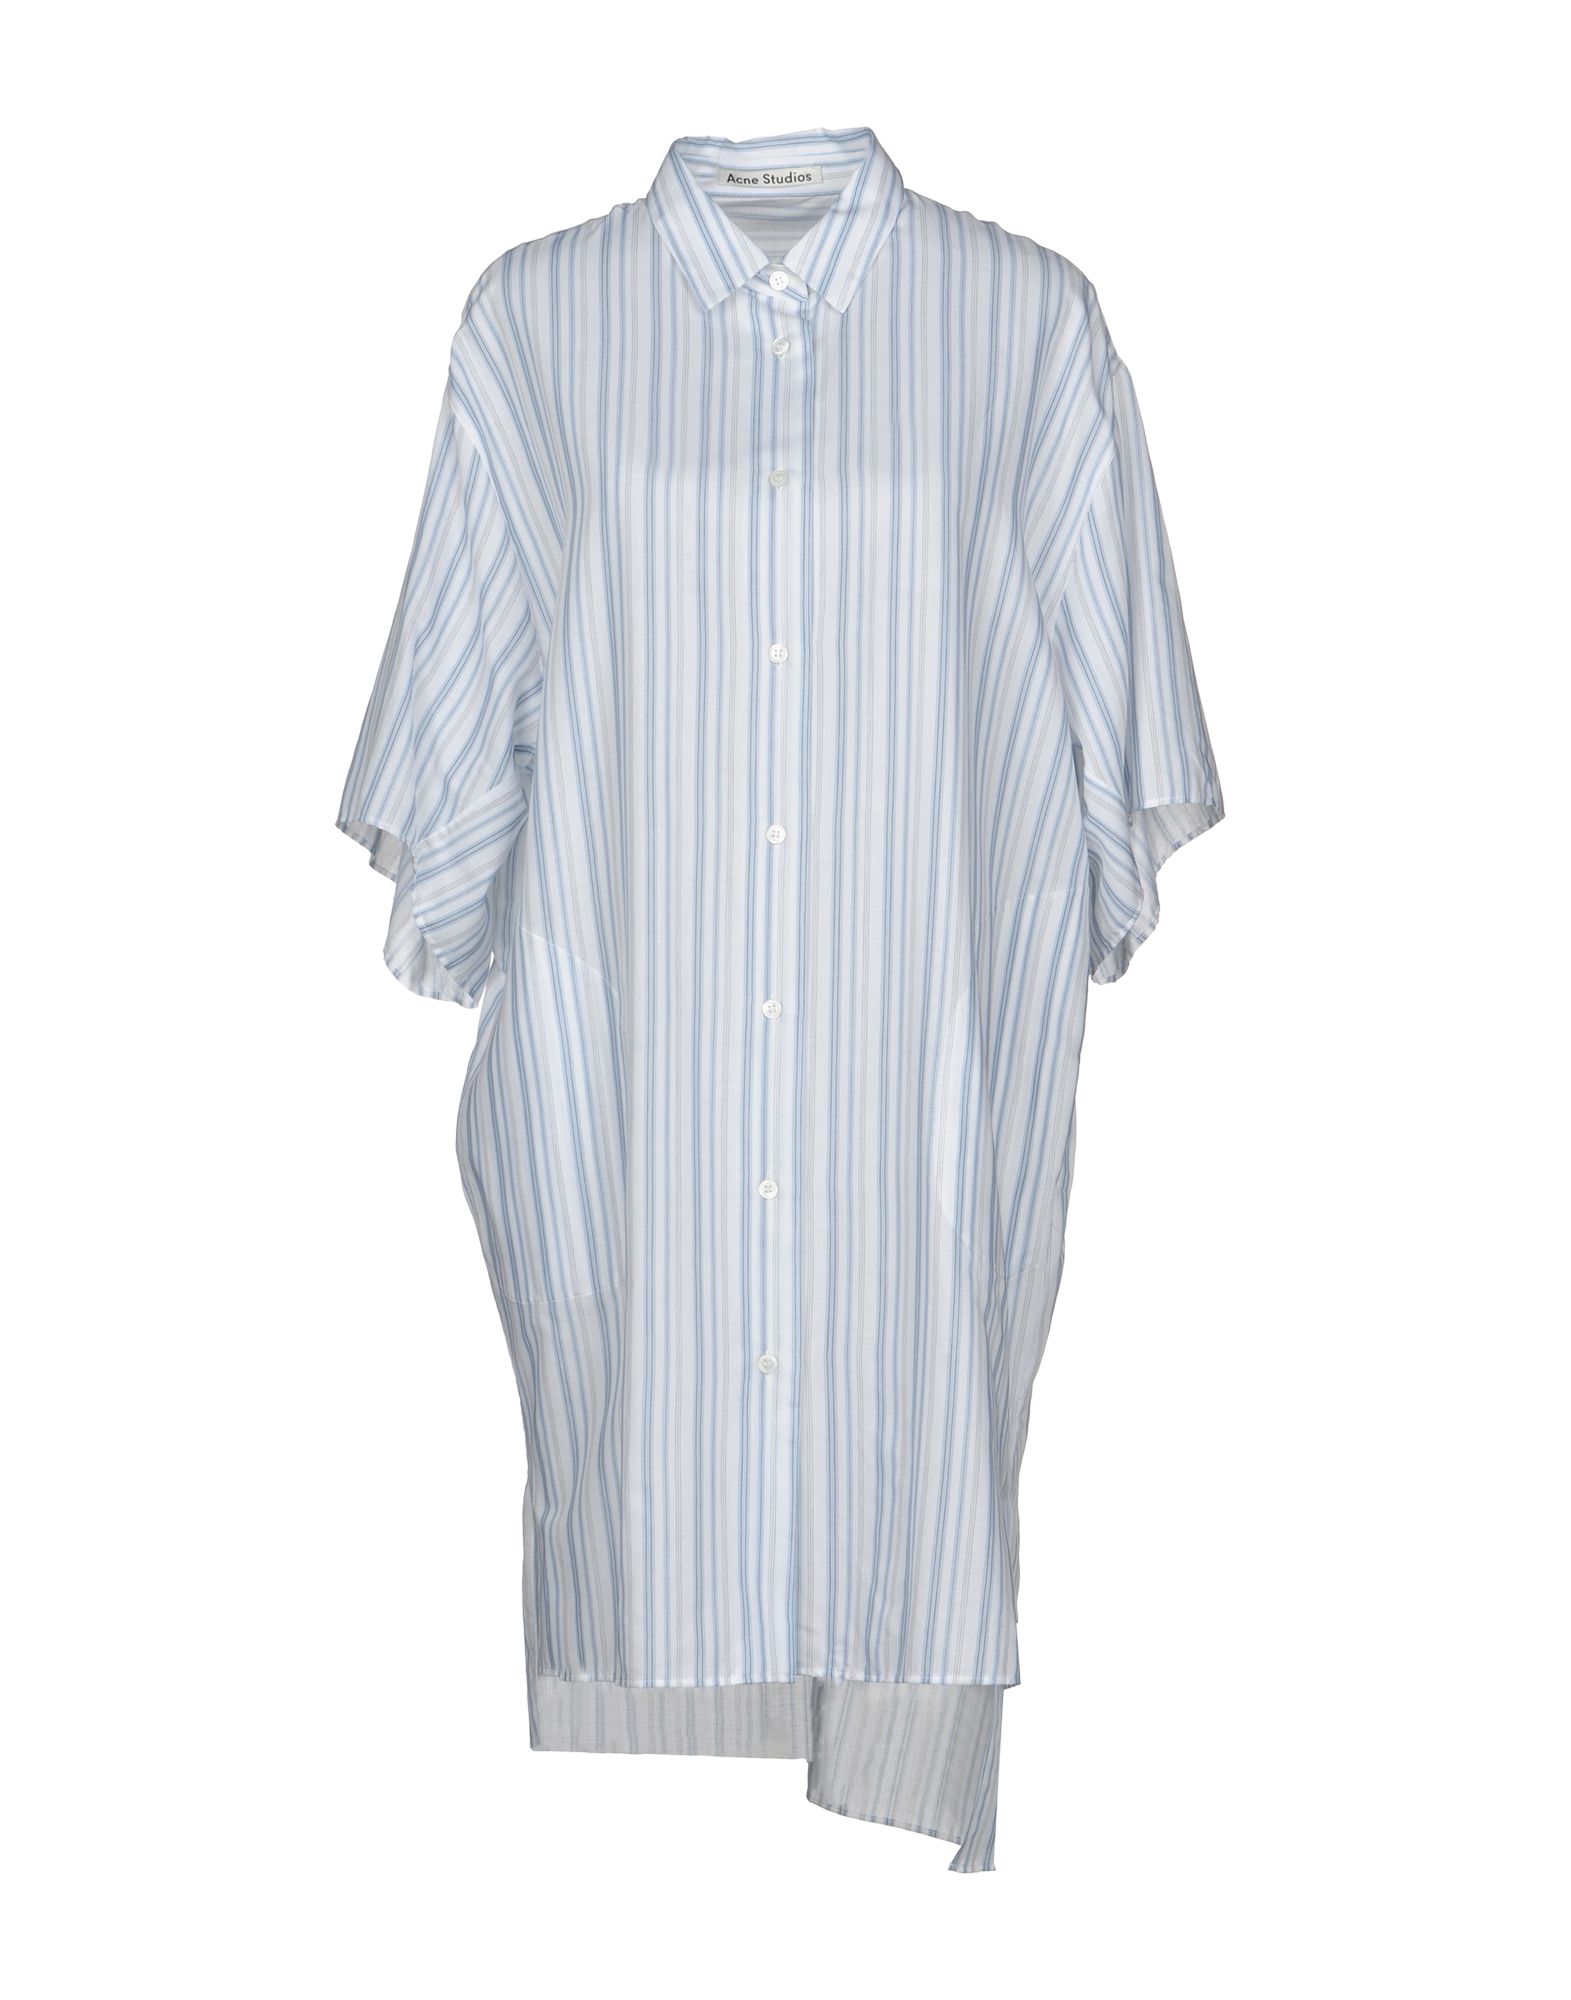 ACNE STUDIOS Shirt dress,38750318LU 4